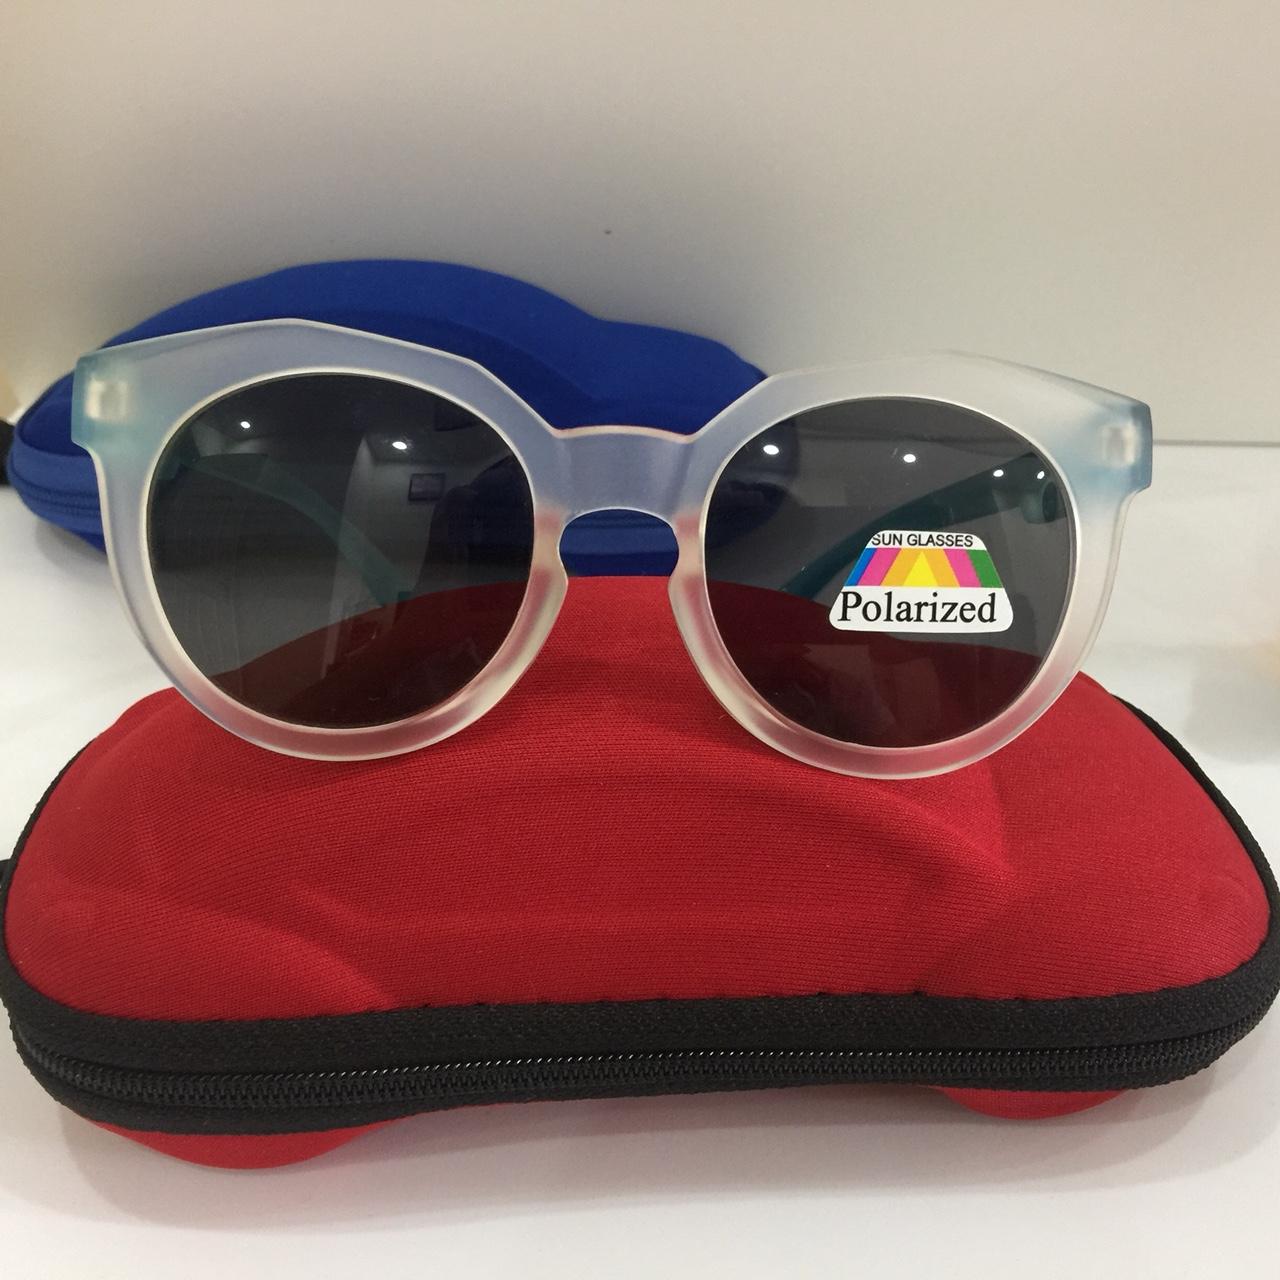 [SIÊU ĐÁNG YÊU] Bộ kính mắt dành cho trẻ em với mắt kính chống lóa và Tia UV bảo vệ...